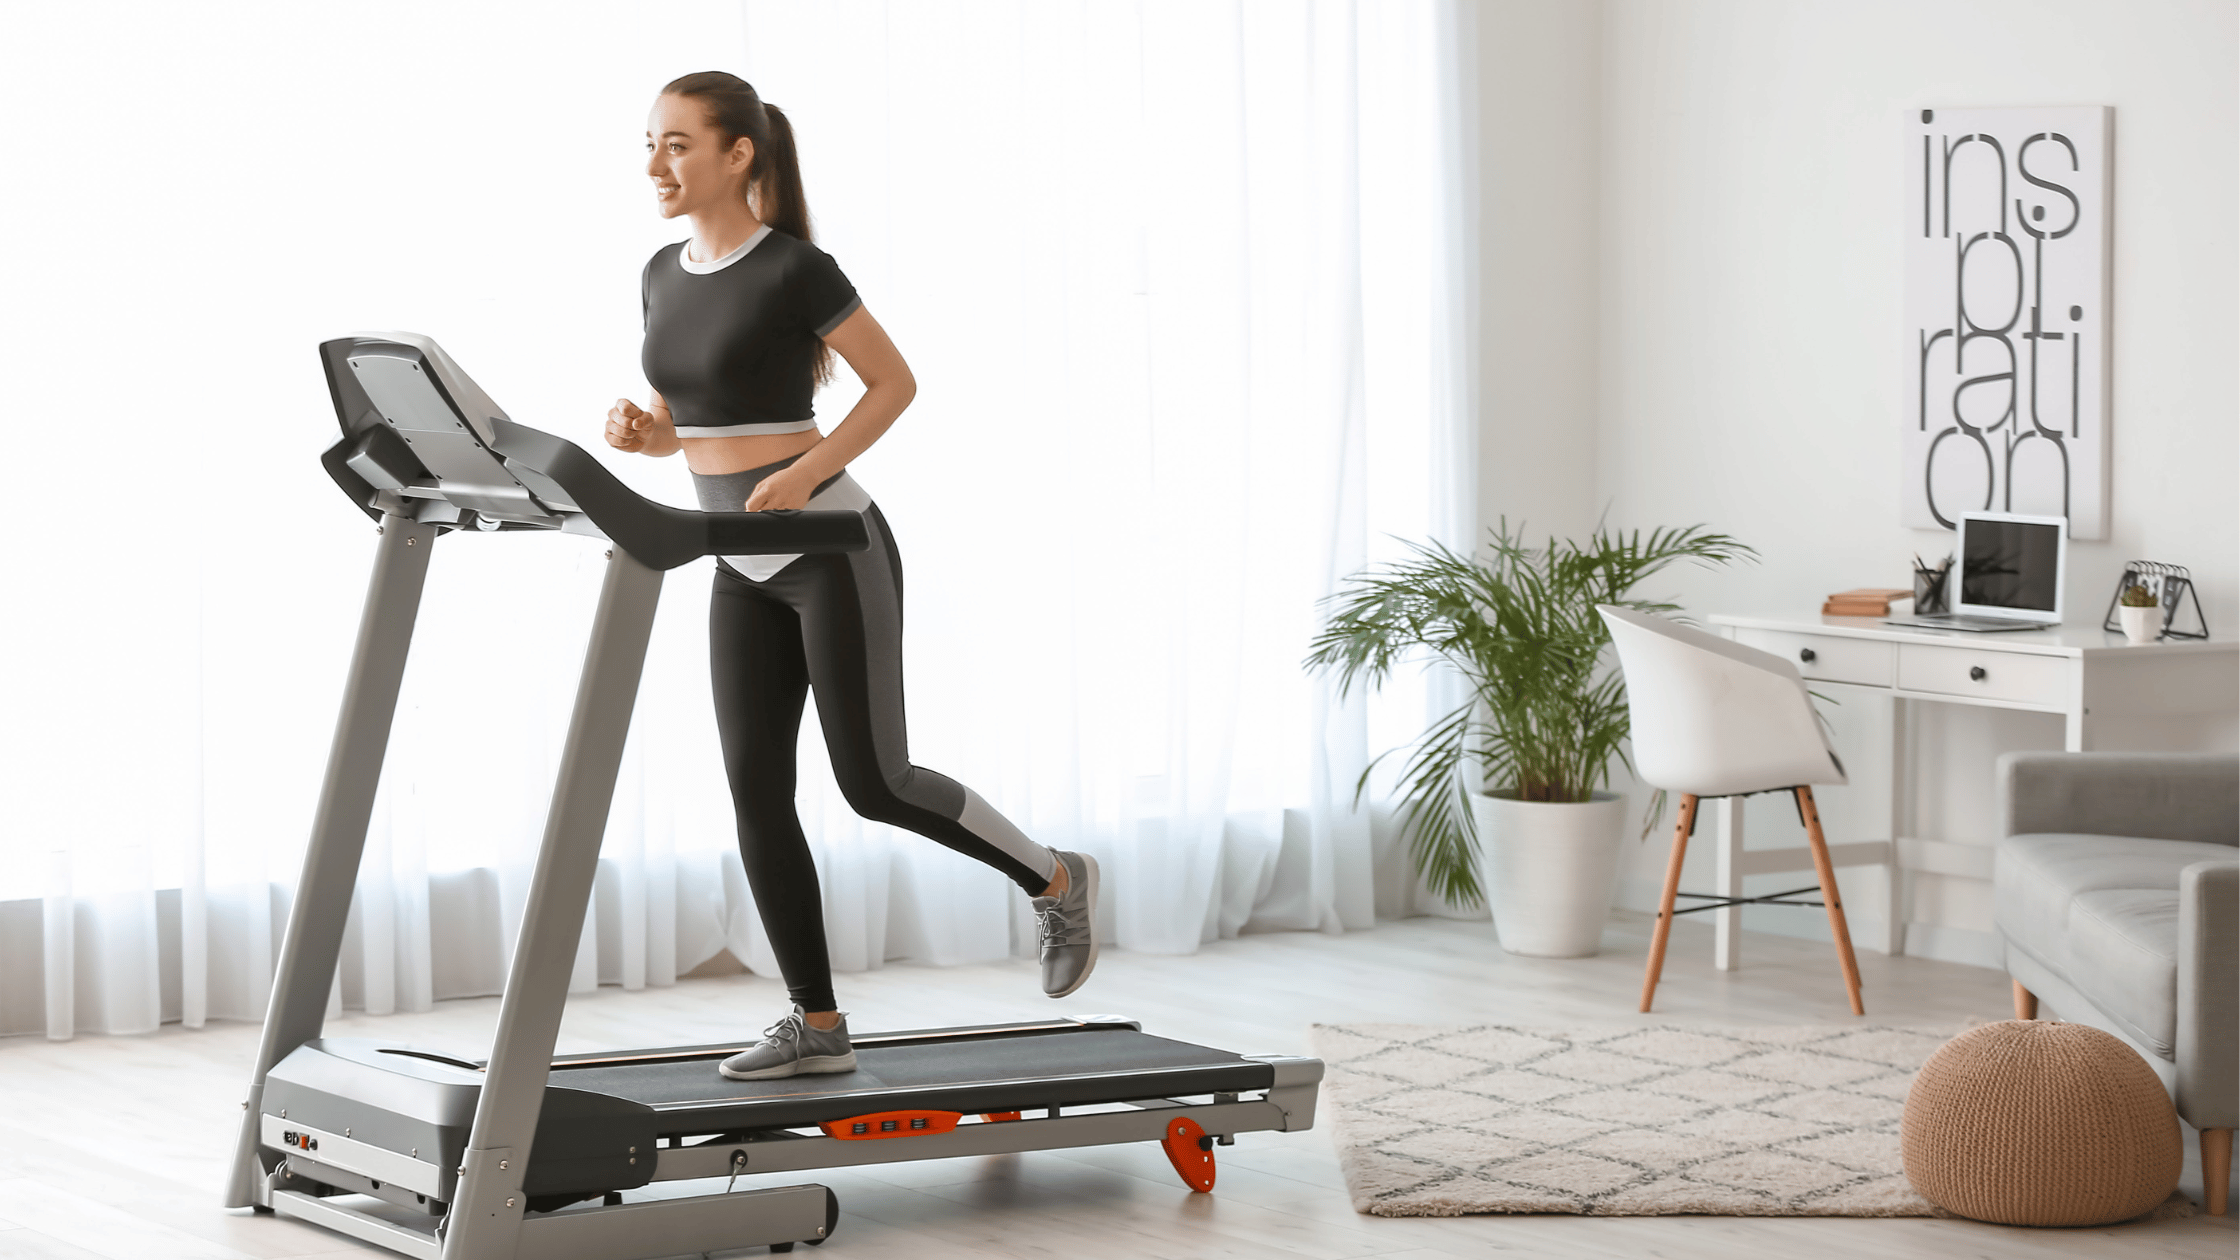 Treadmill Running Focus on Form